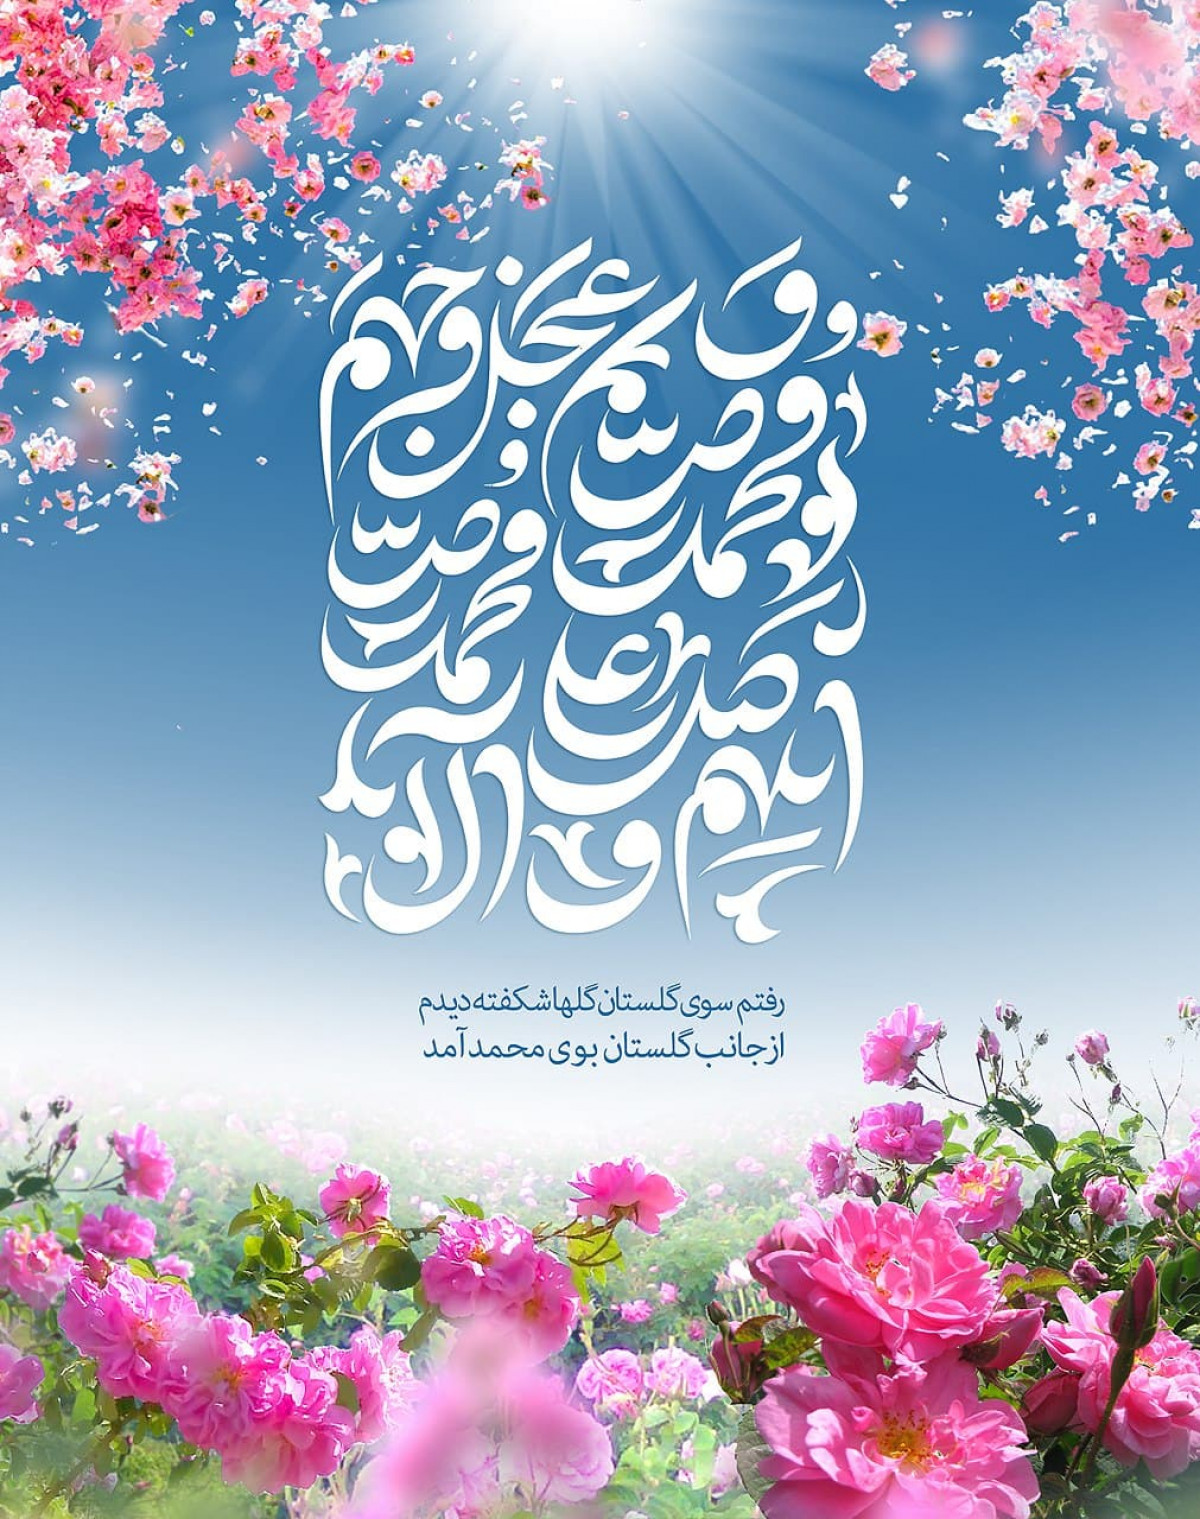 پوستر: رفتم سوی گلستان گلها شکفته دیدم  از جانب گلستان بوی محمد آمد